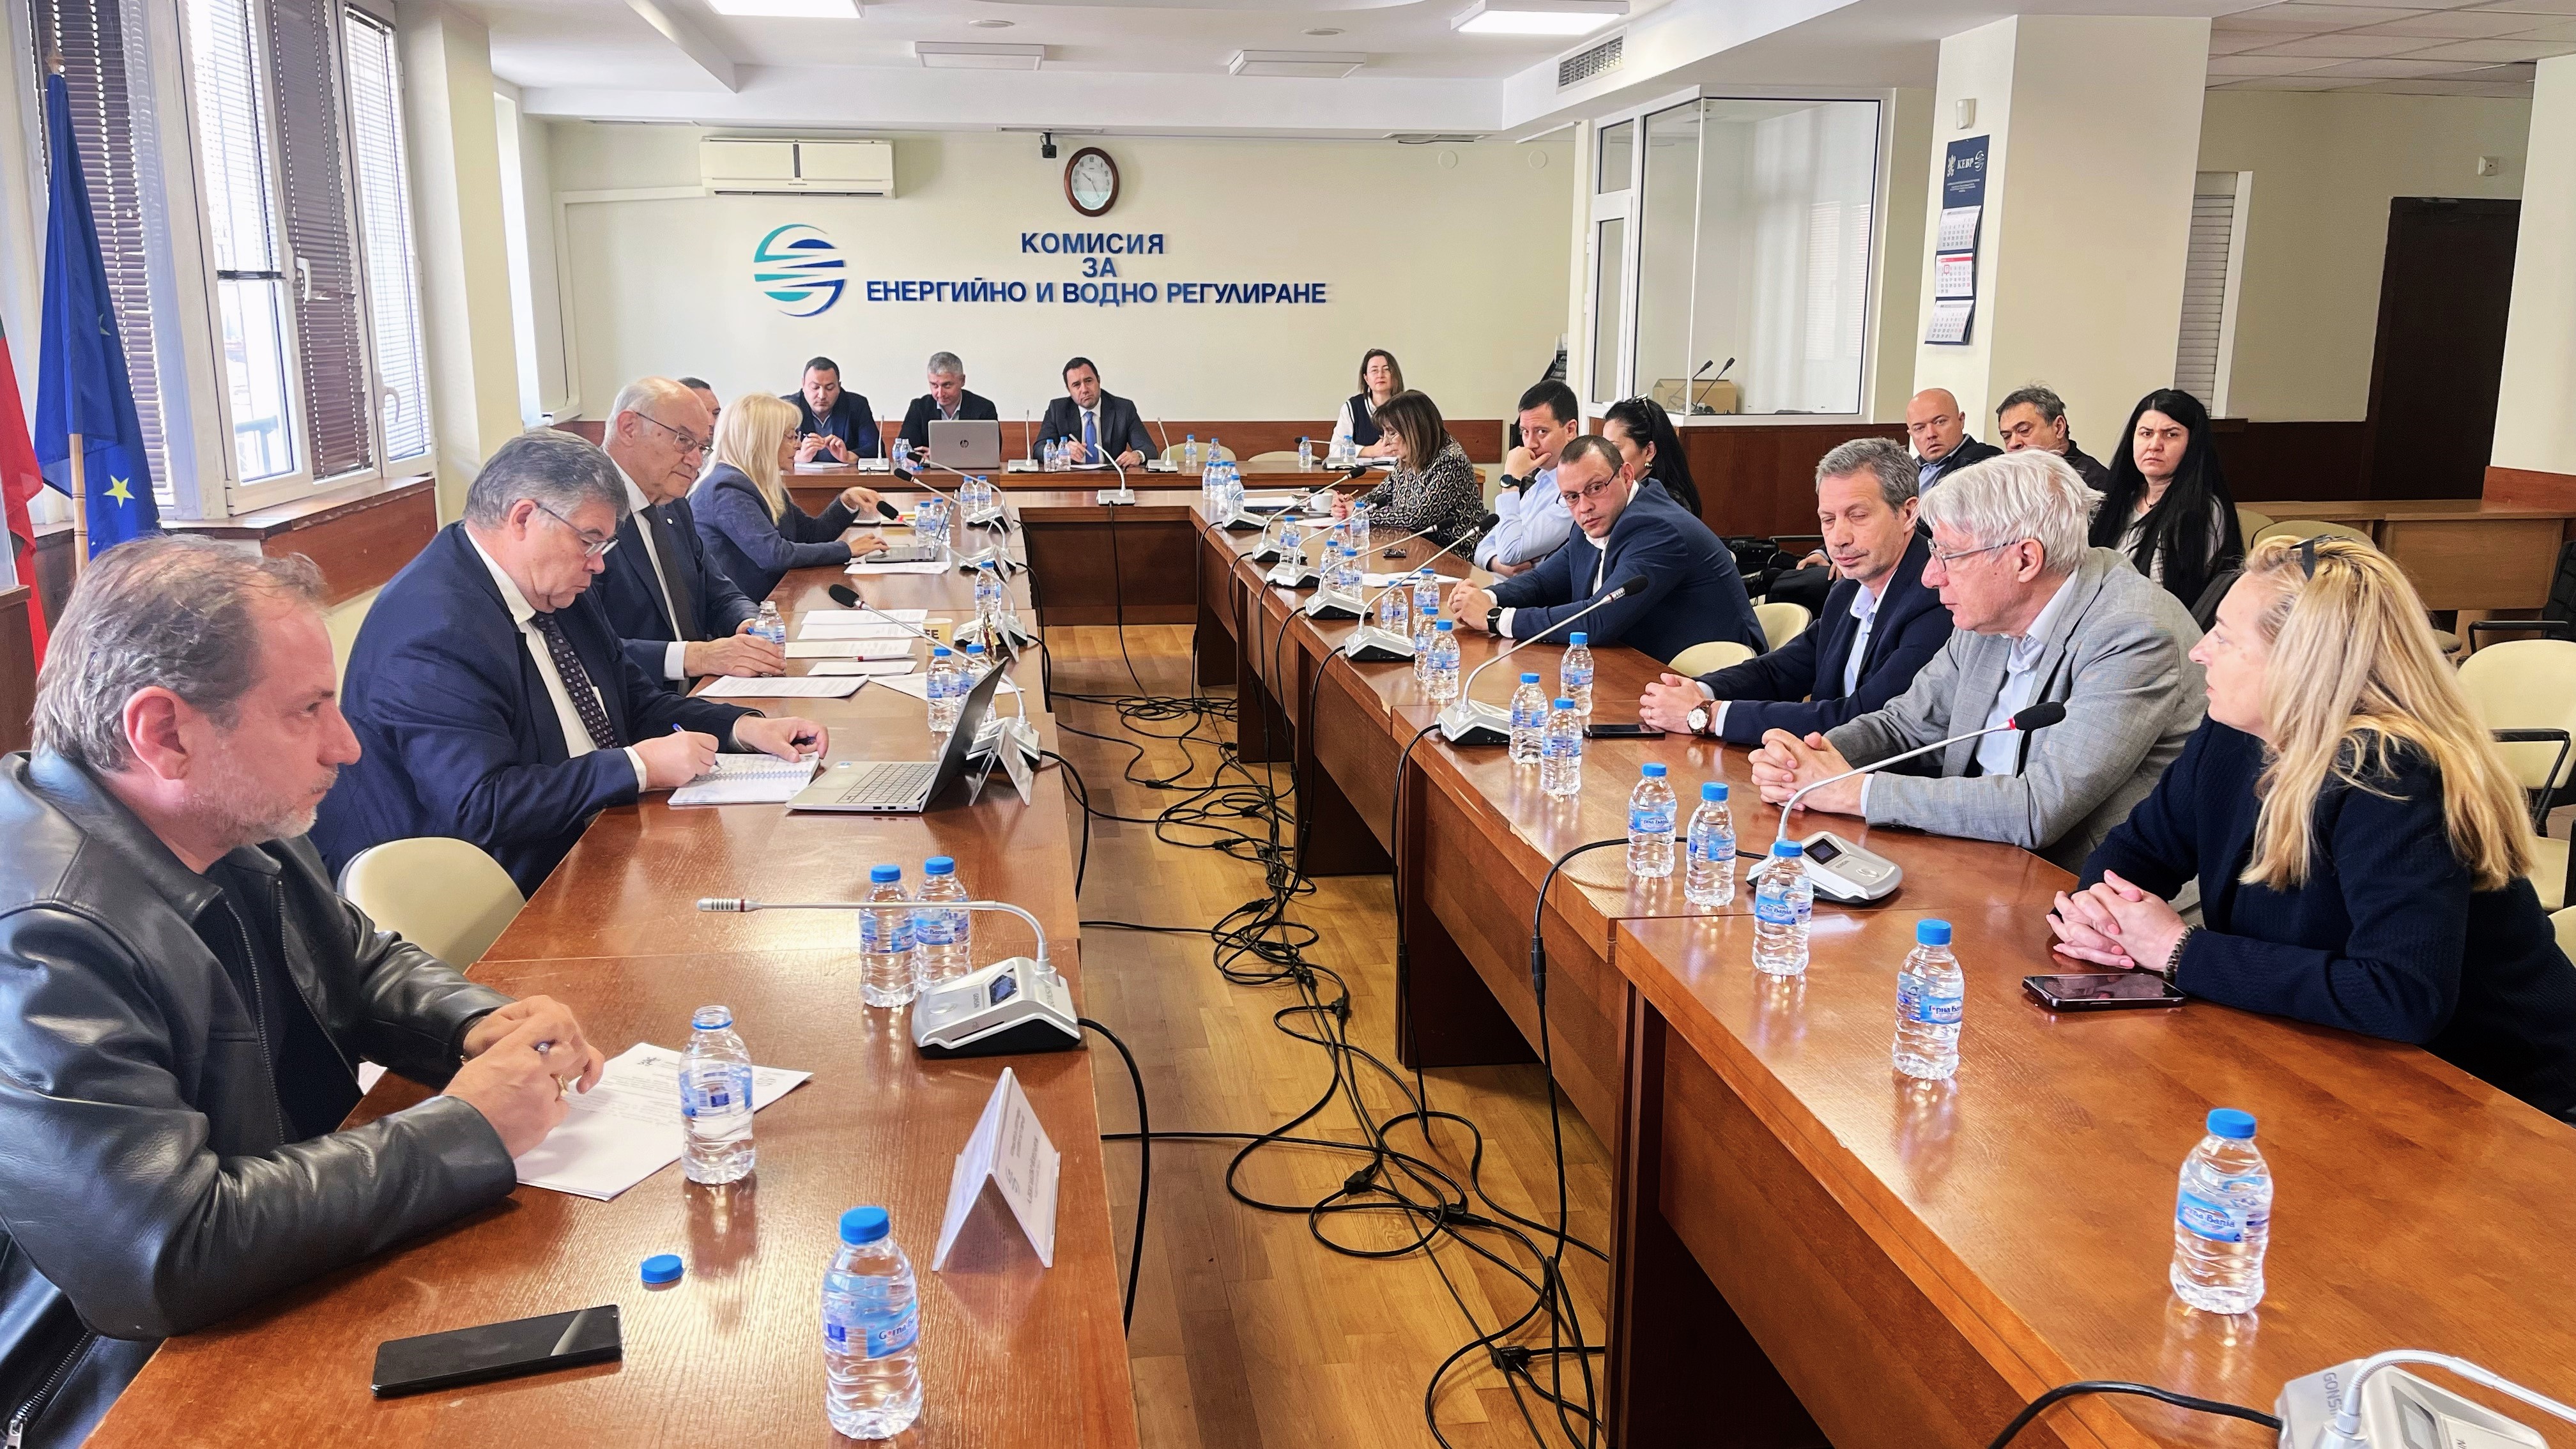 Комисията за енергийно и водно регулиране проведе обществено обсъждане на